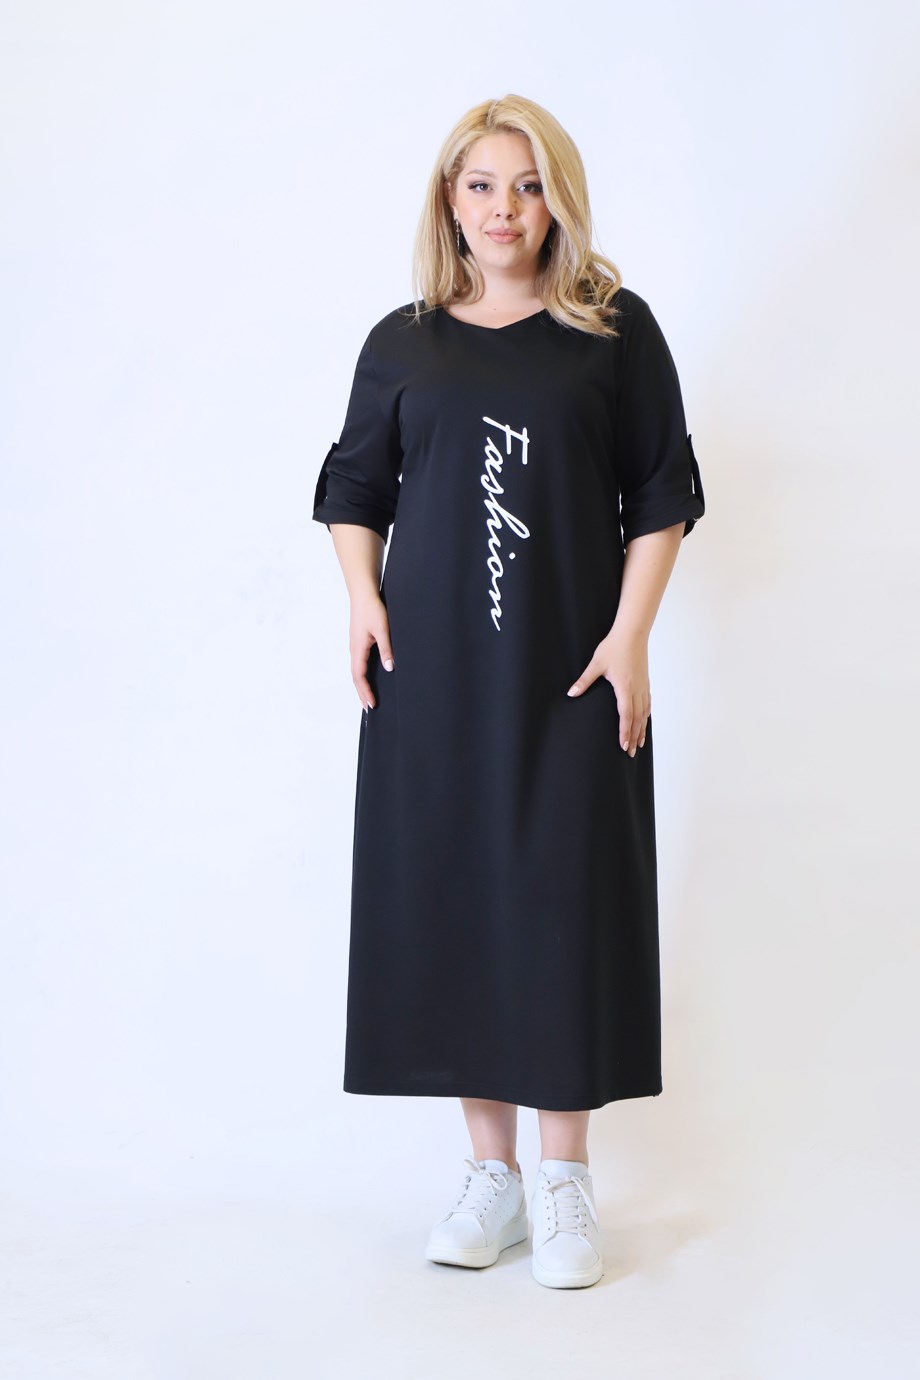 Büyük Beden Fashion Elbise Siyah | Bedrinxxl | Büyük Beden Abiye Elbise,  Tunik, Genç Buyuk Beden Elbise Tesettür Modelleri ve Fiyatları